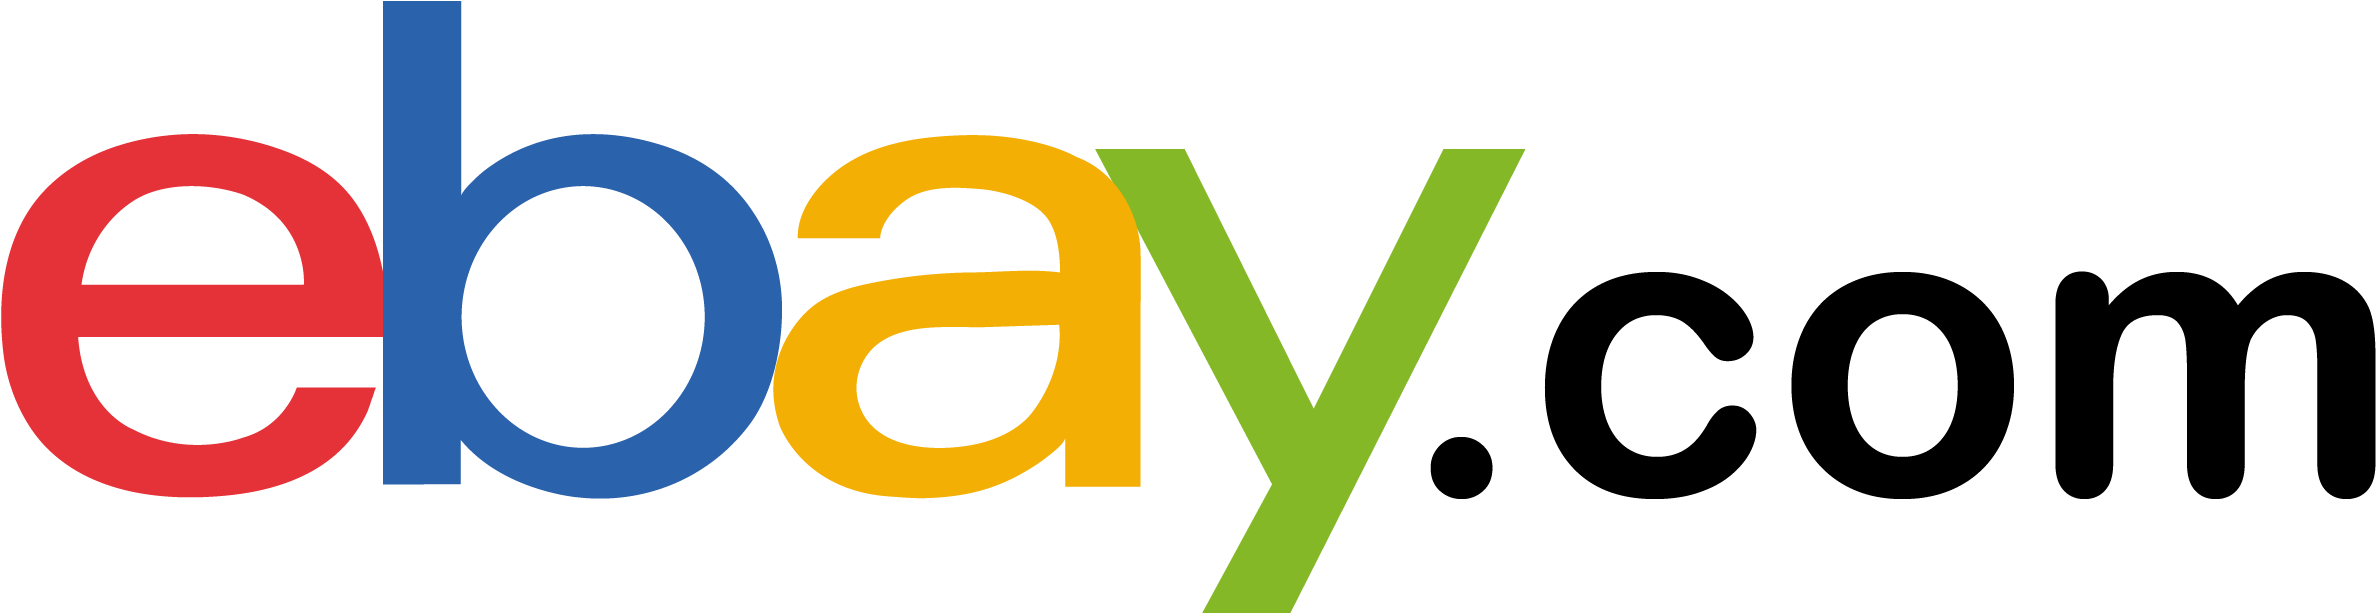 Immagine Trasparente PNG logo eBay